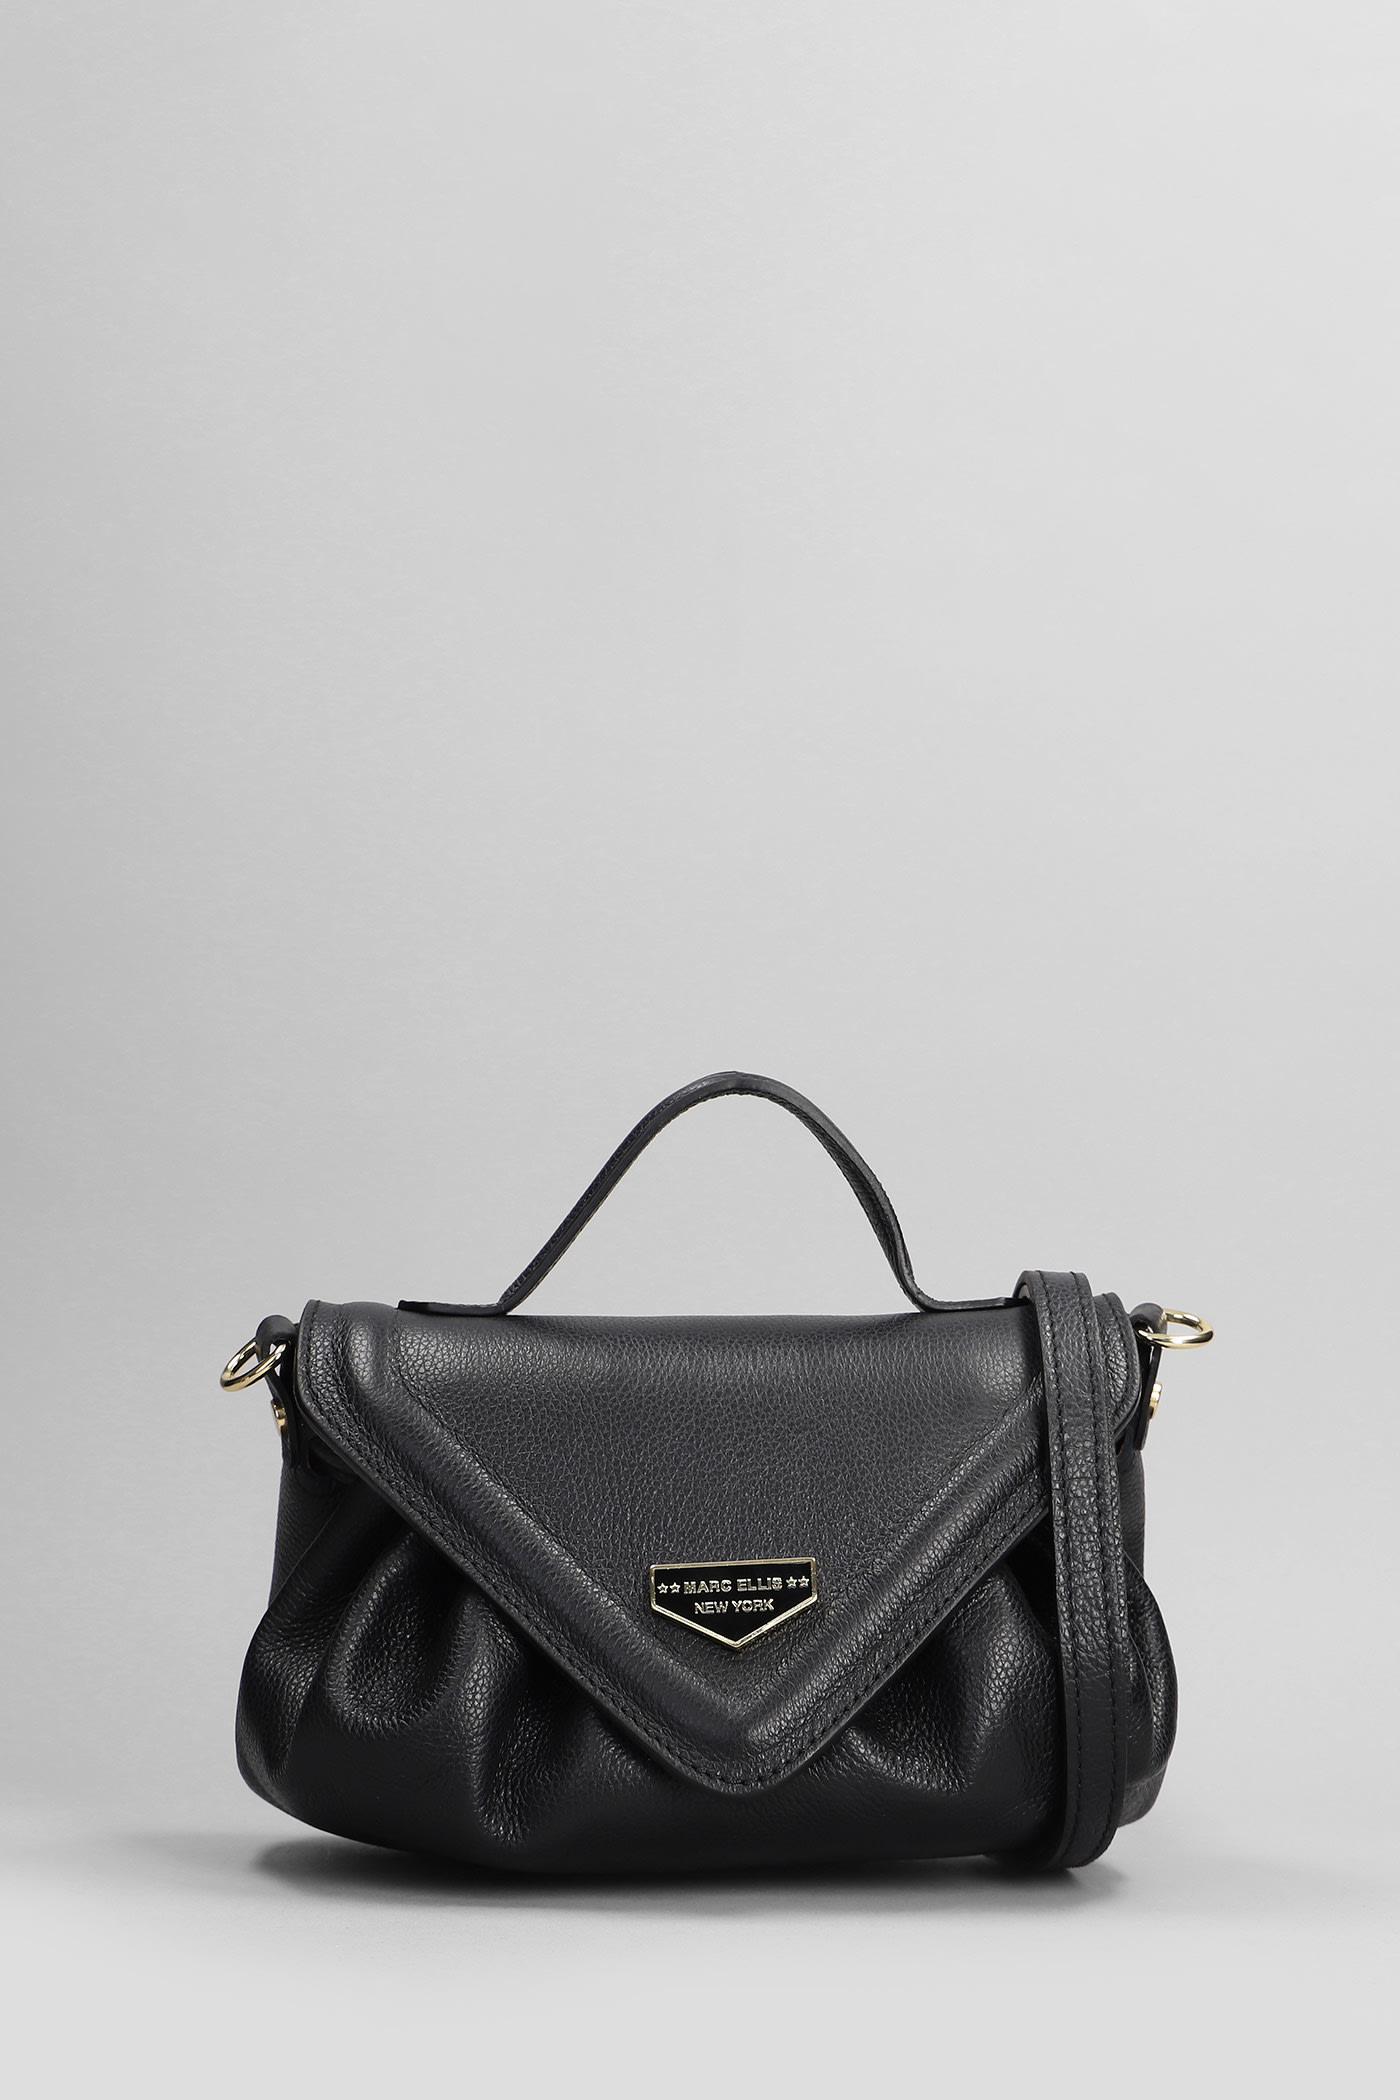 Loly Do Shoulder Bag In Black Leather